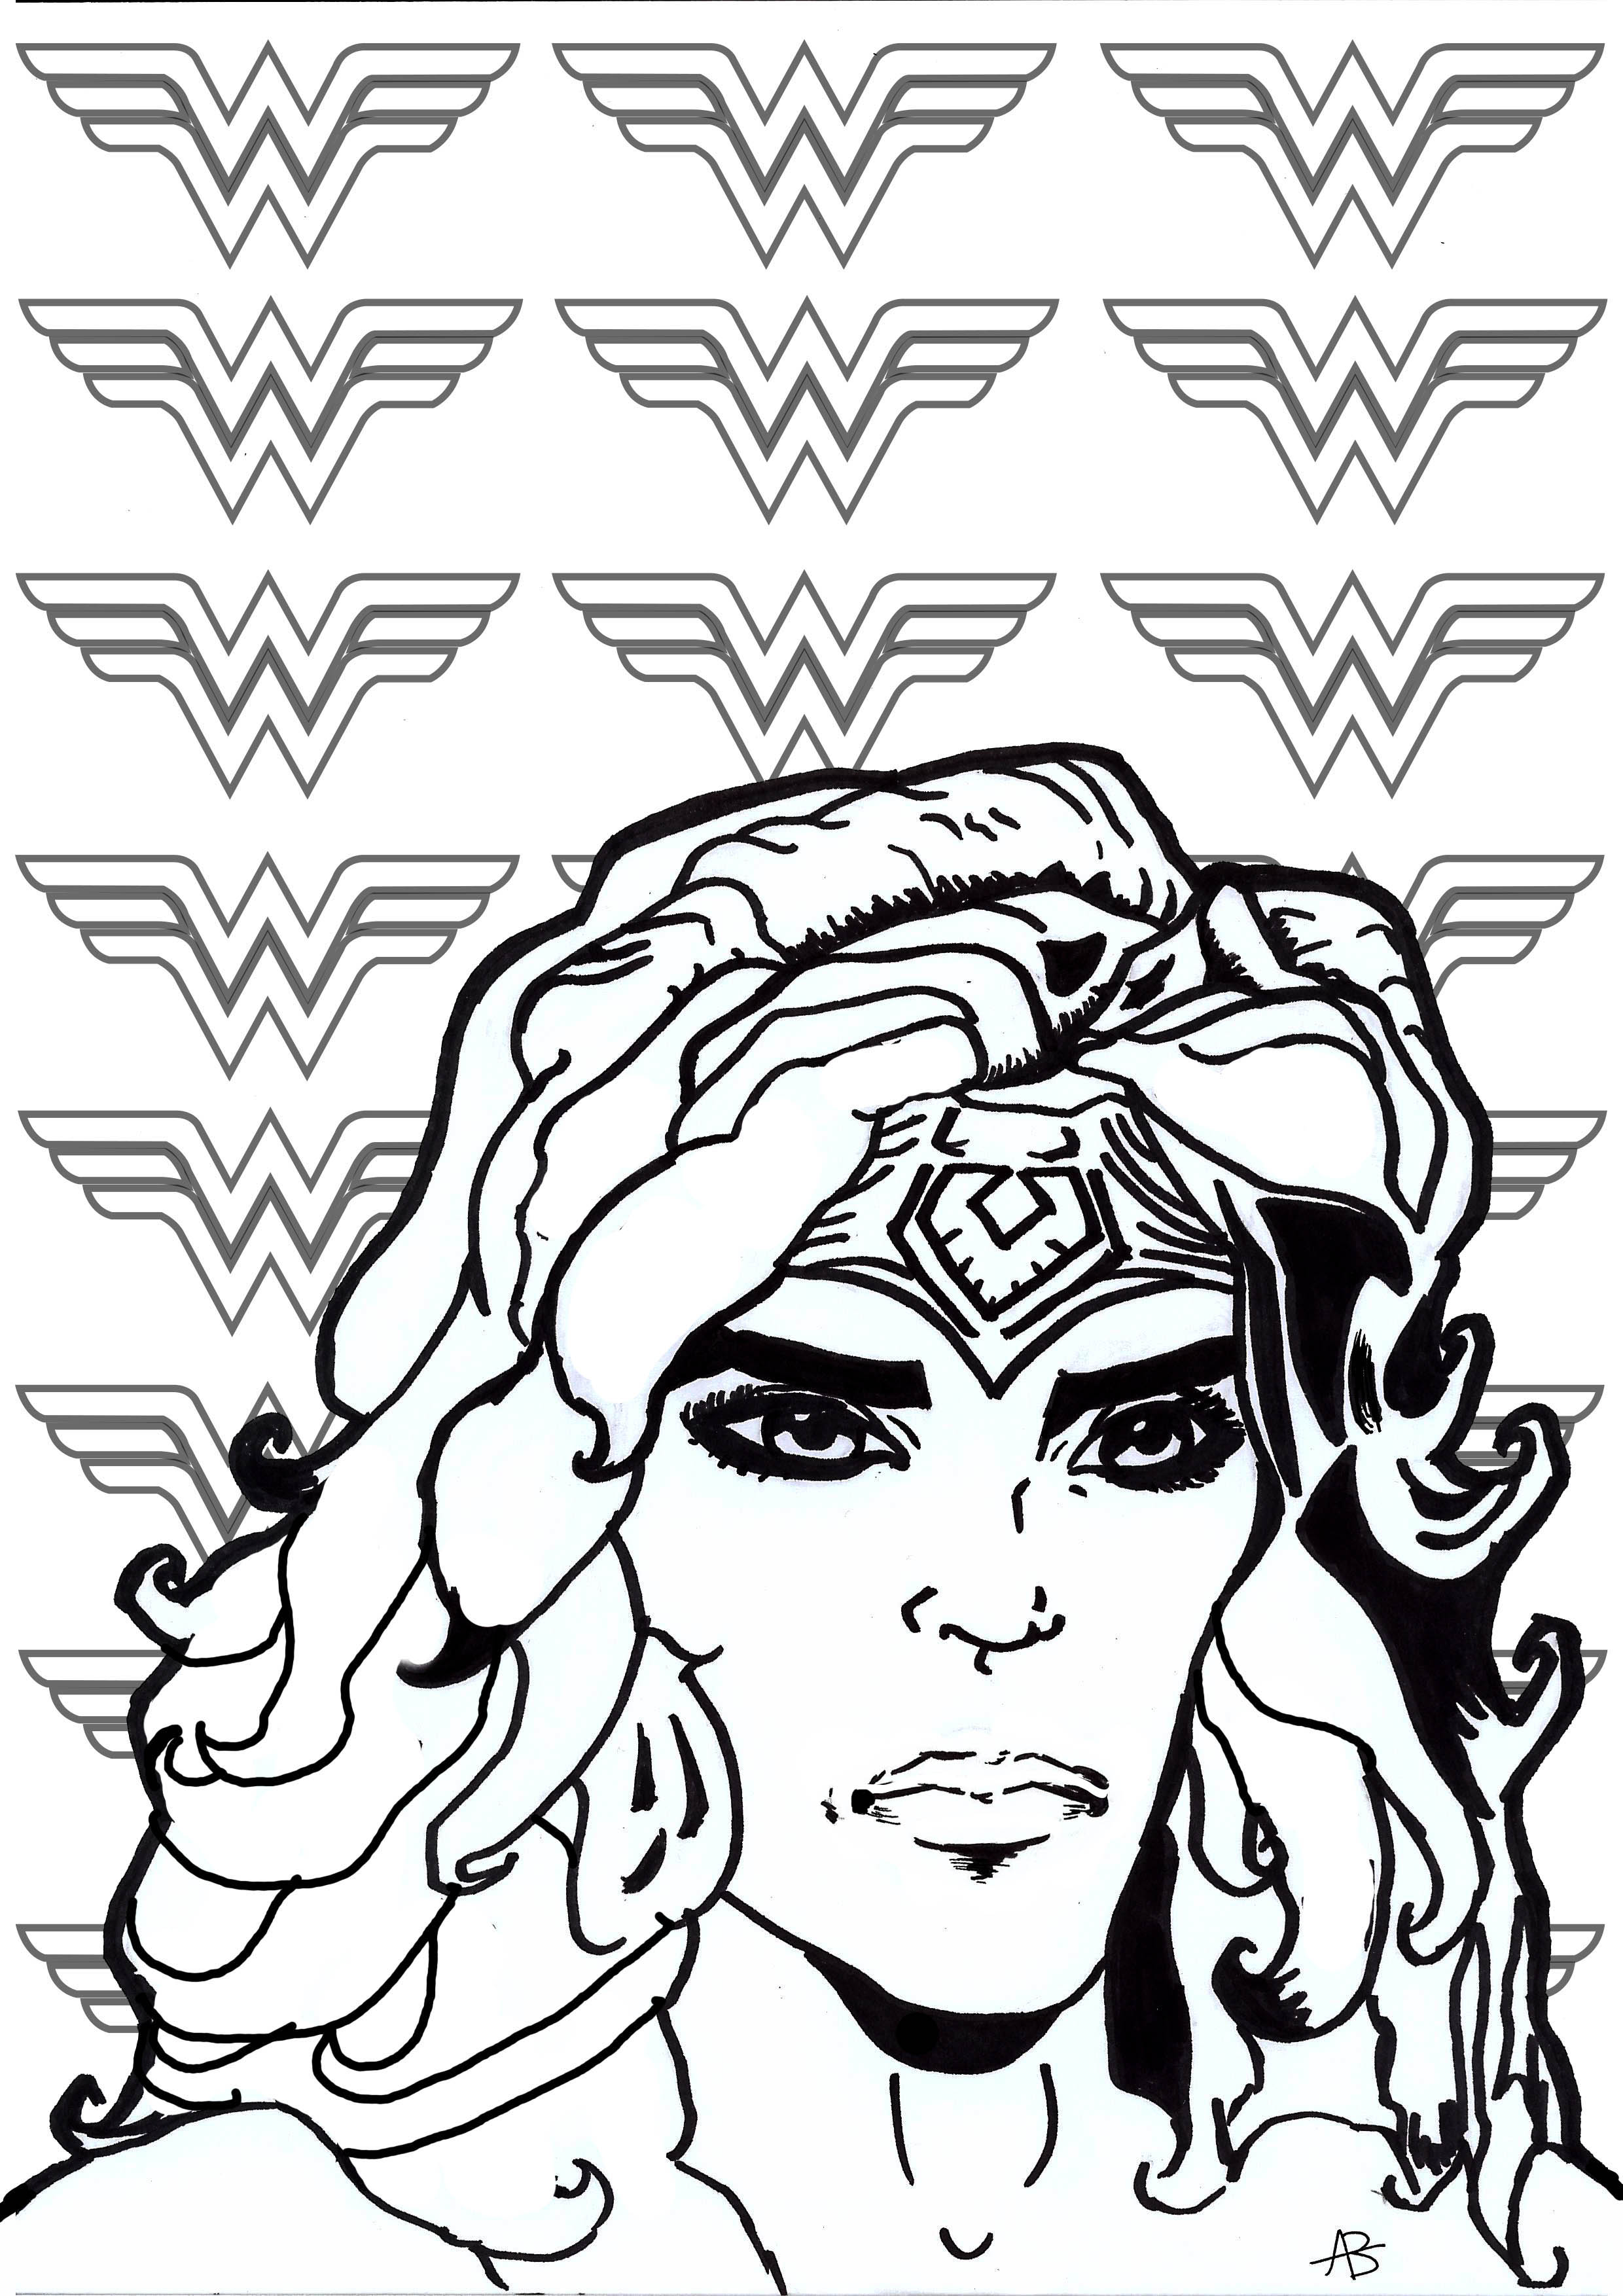 Malvorlage inspiriert von Wonder Woman (DC Comics Figur), Künstler : Allan